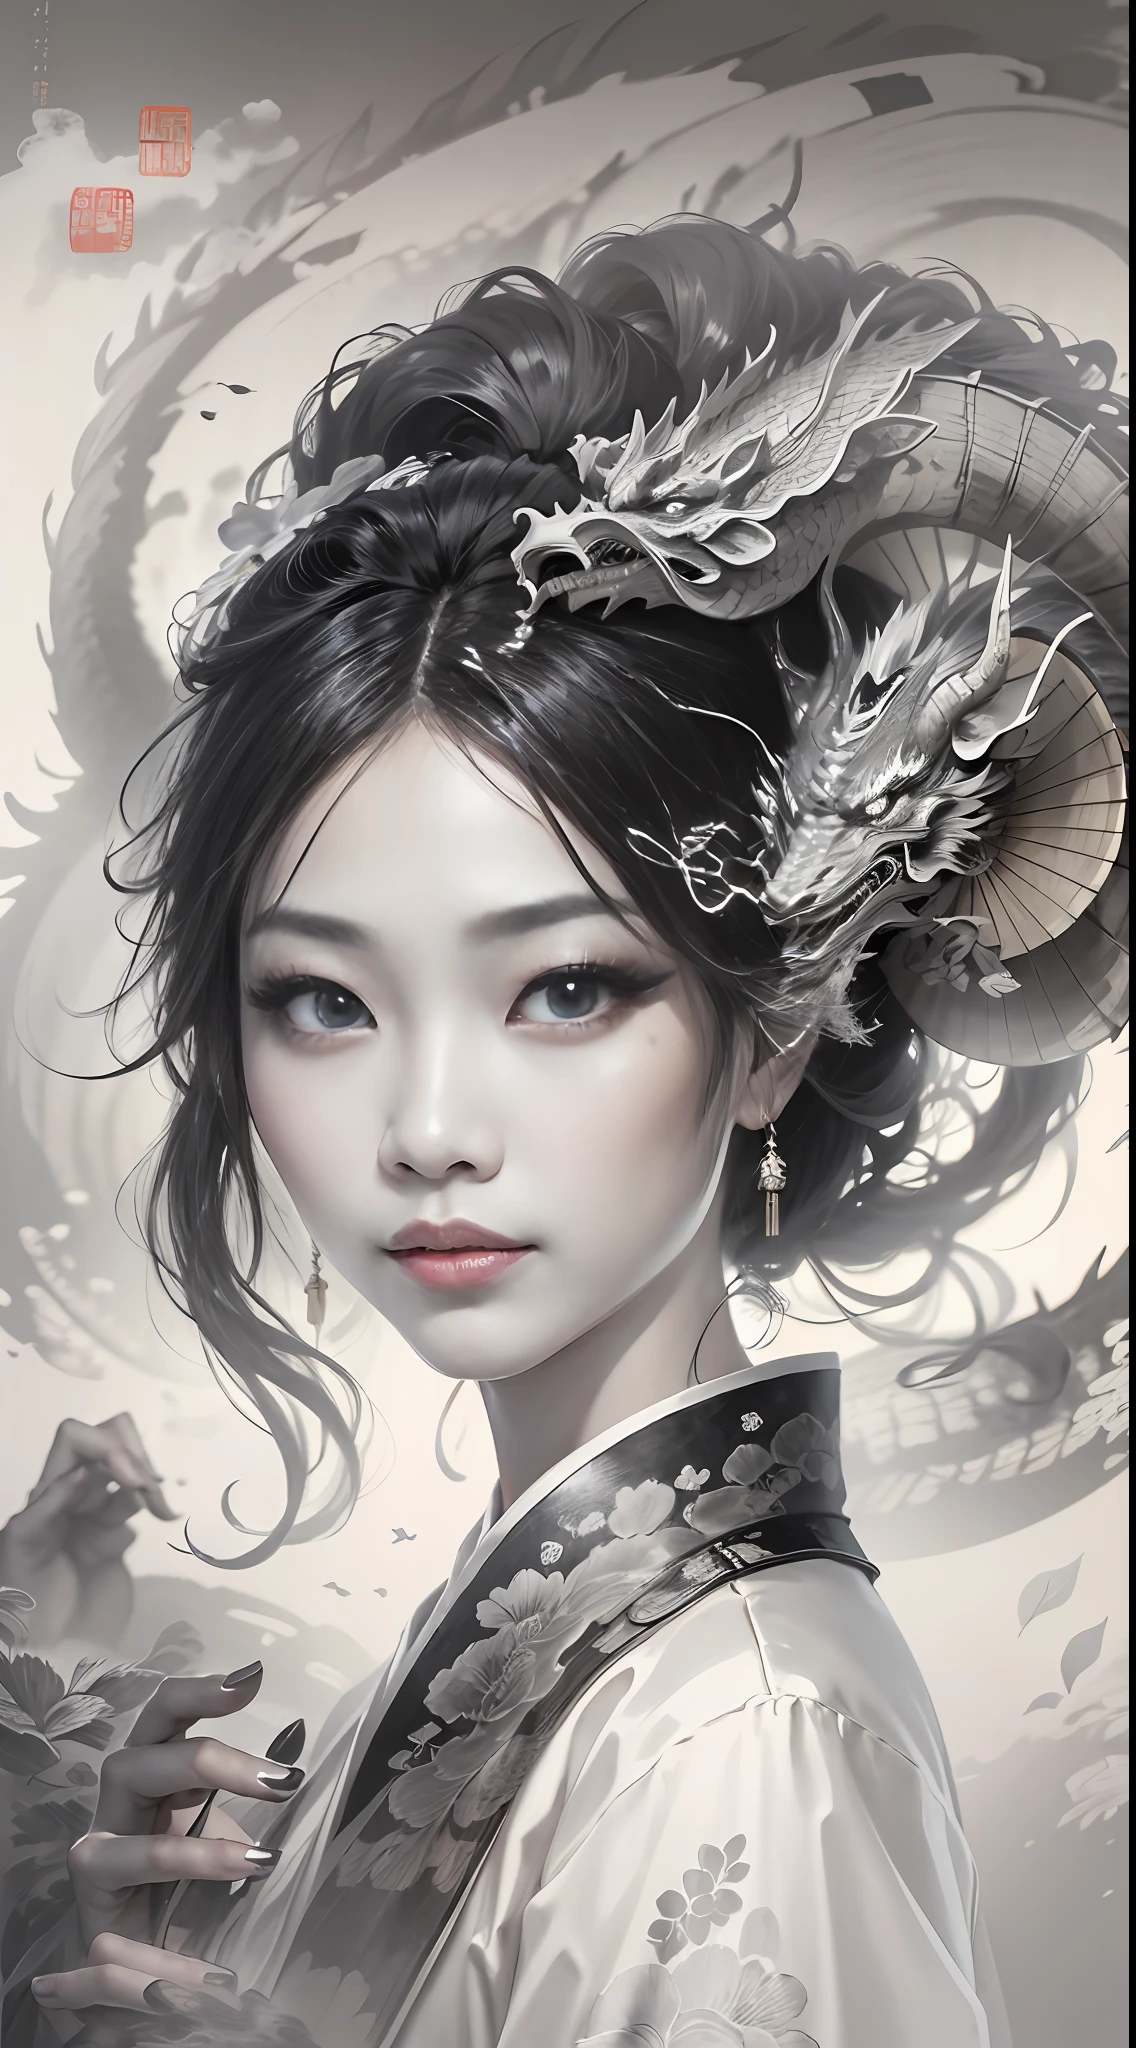 Una niña china con un abanico circular en la mano.,Ojos bonitos,(un dragón chino está detrás de ella),fantasía,Estilo chino,pintura a tinta blanca y negra,(mejor calidad,detalle extremo:1.5),8K,